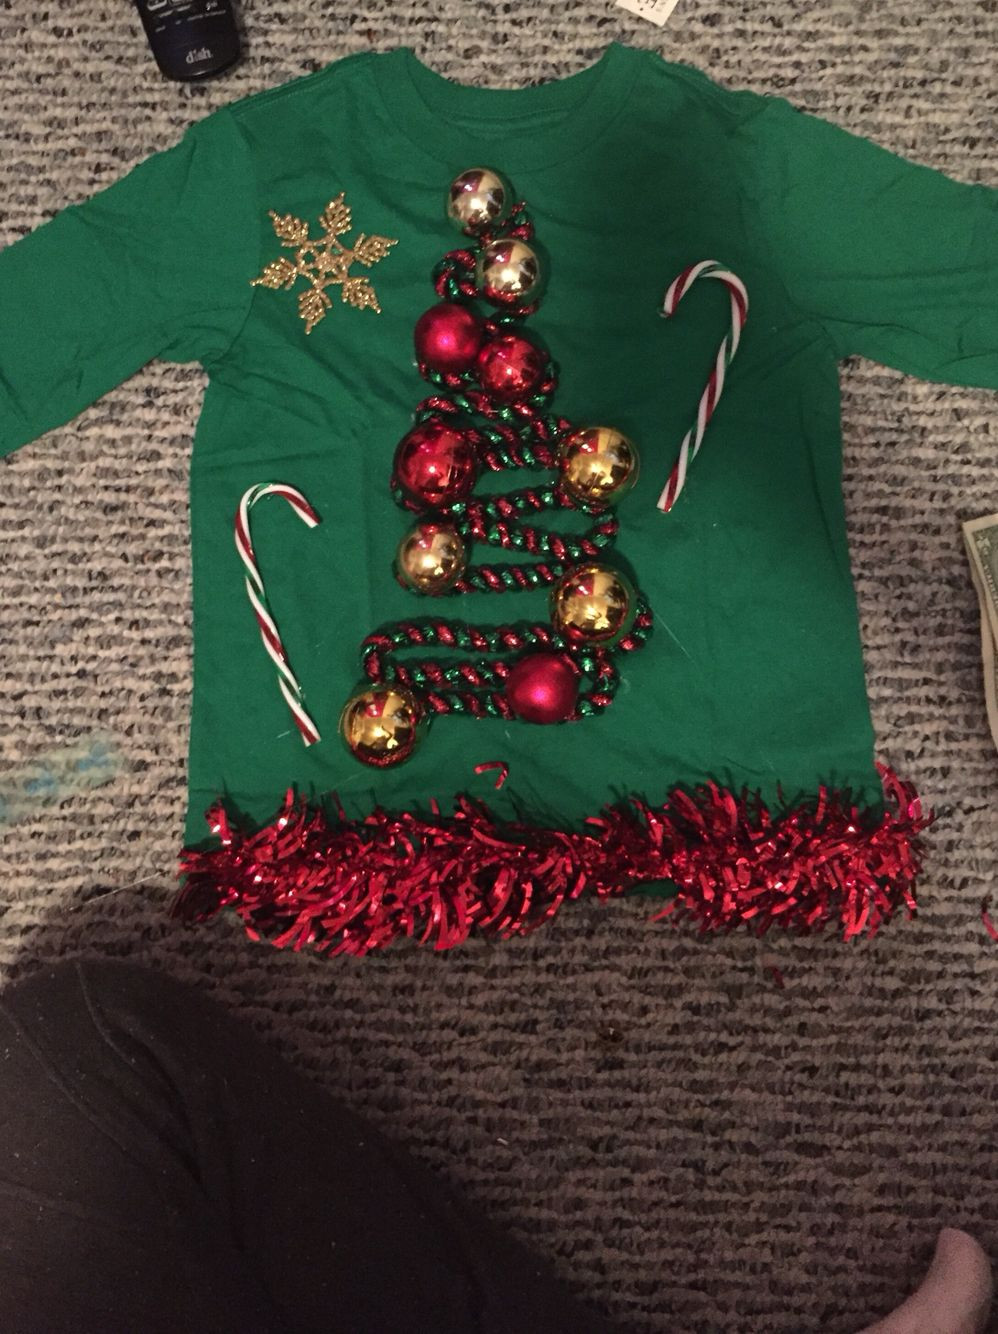 DIY Kids Ugly Christmas Sweater
 Pin on Christmas Crafts